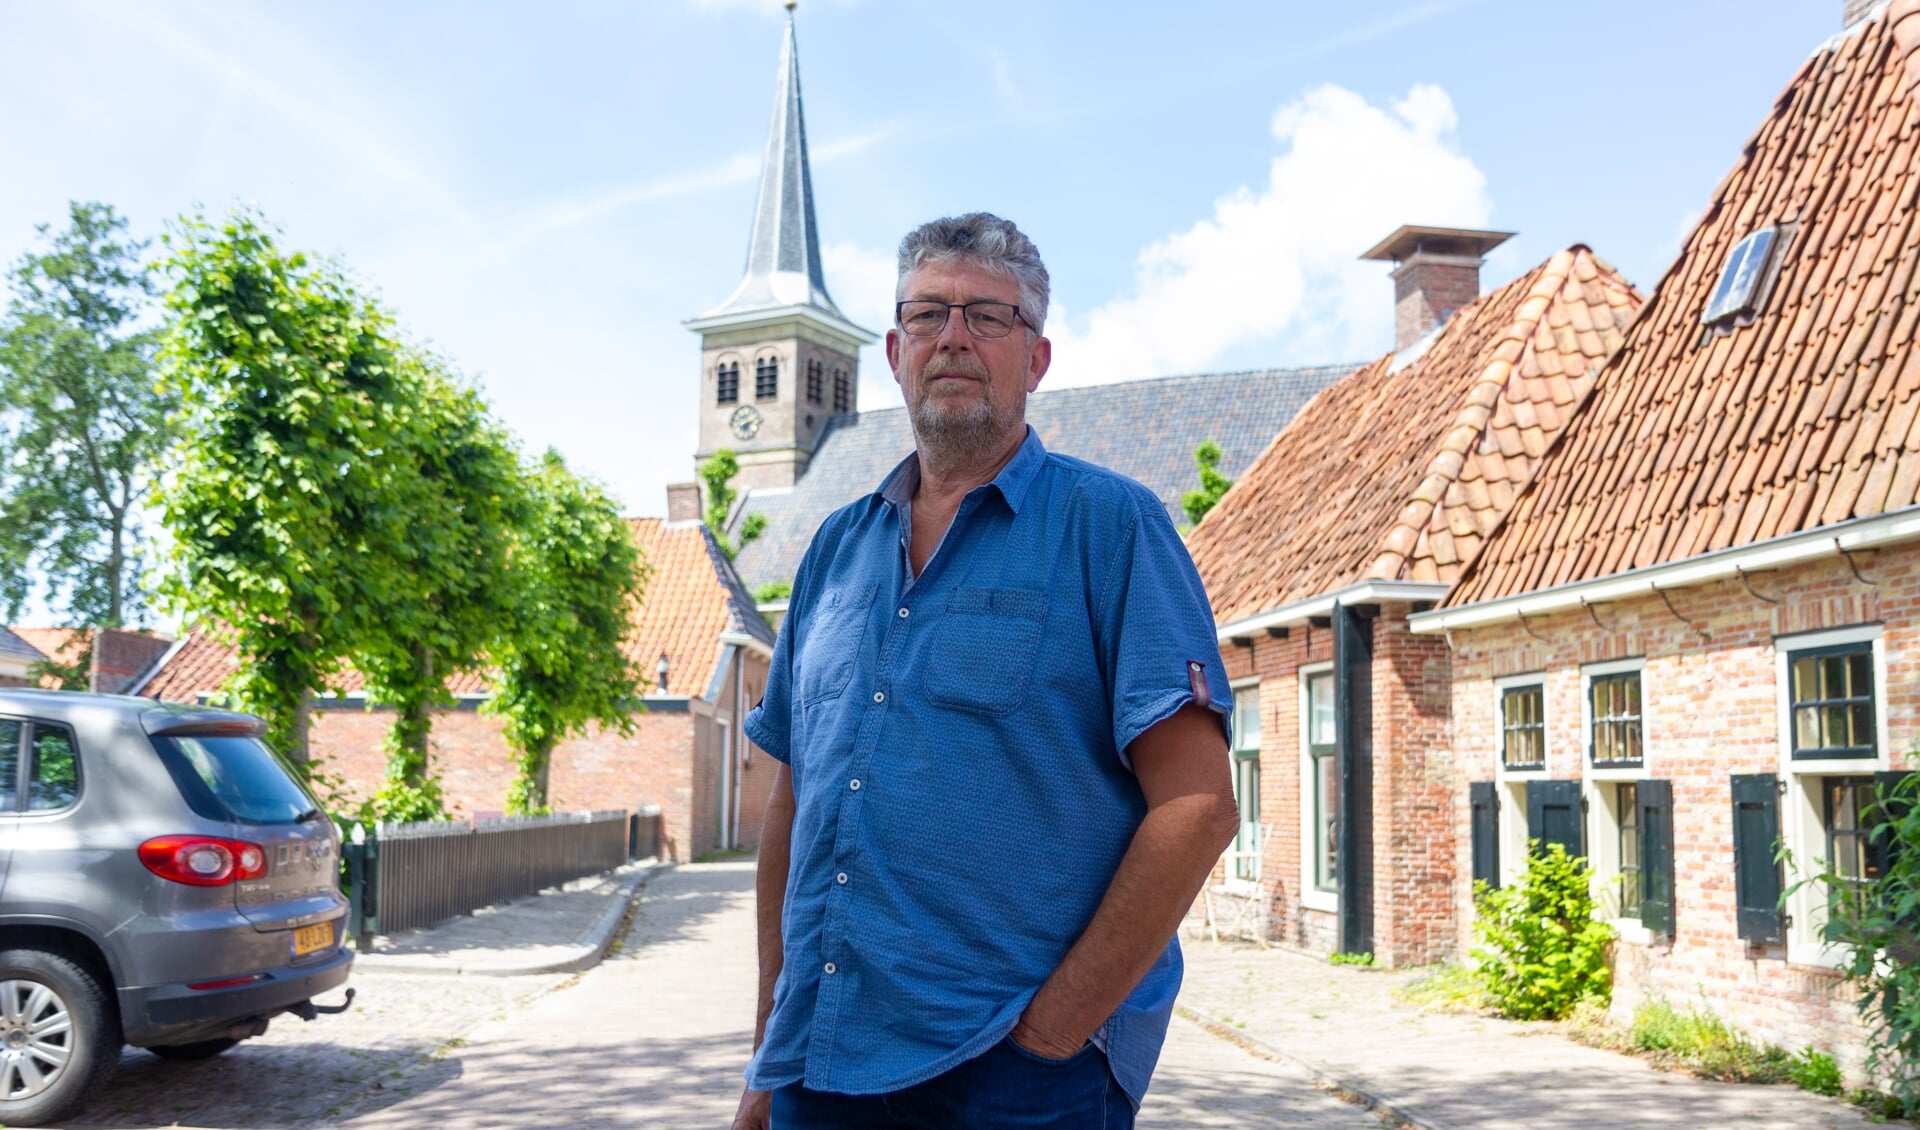 Jack Hoekstra in Ee, met op de achtergrond de historische kerk op de terp. 